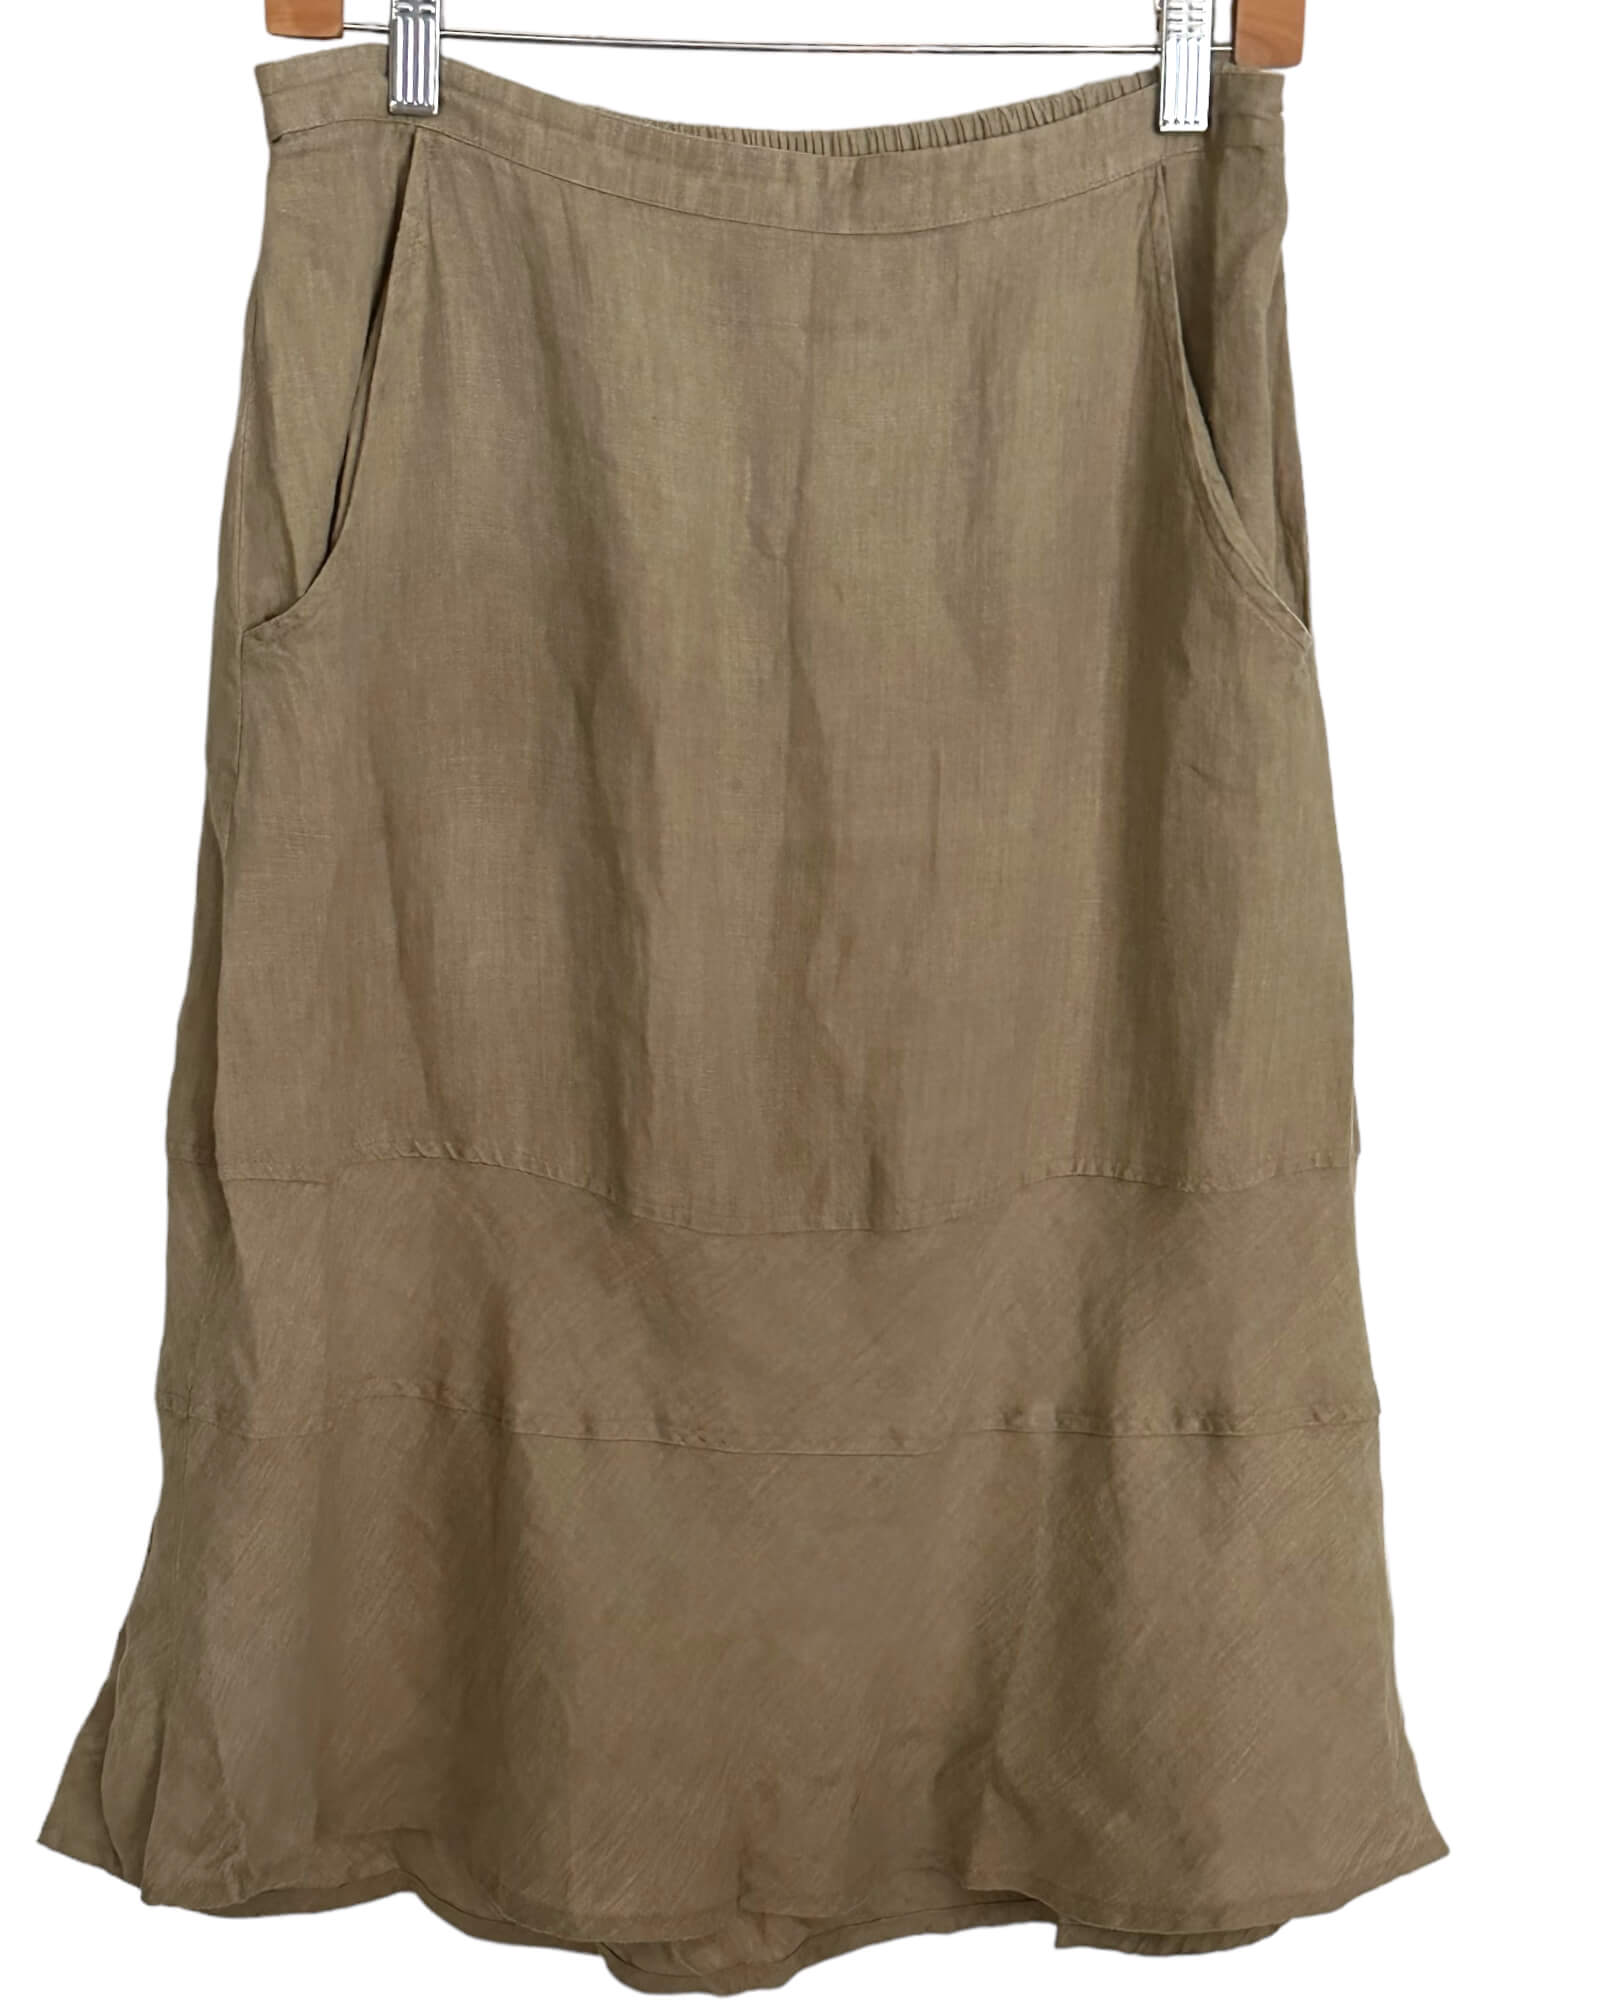 Soft Autumn FLAX sand beige linen midi skirt